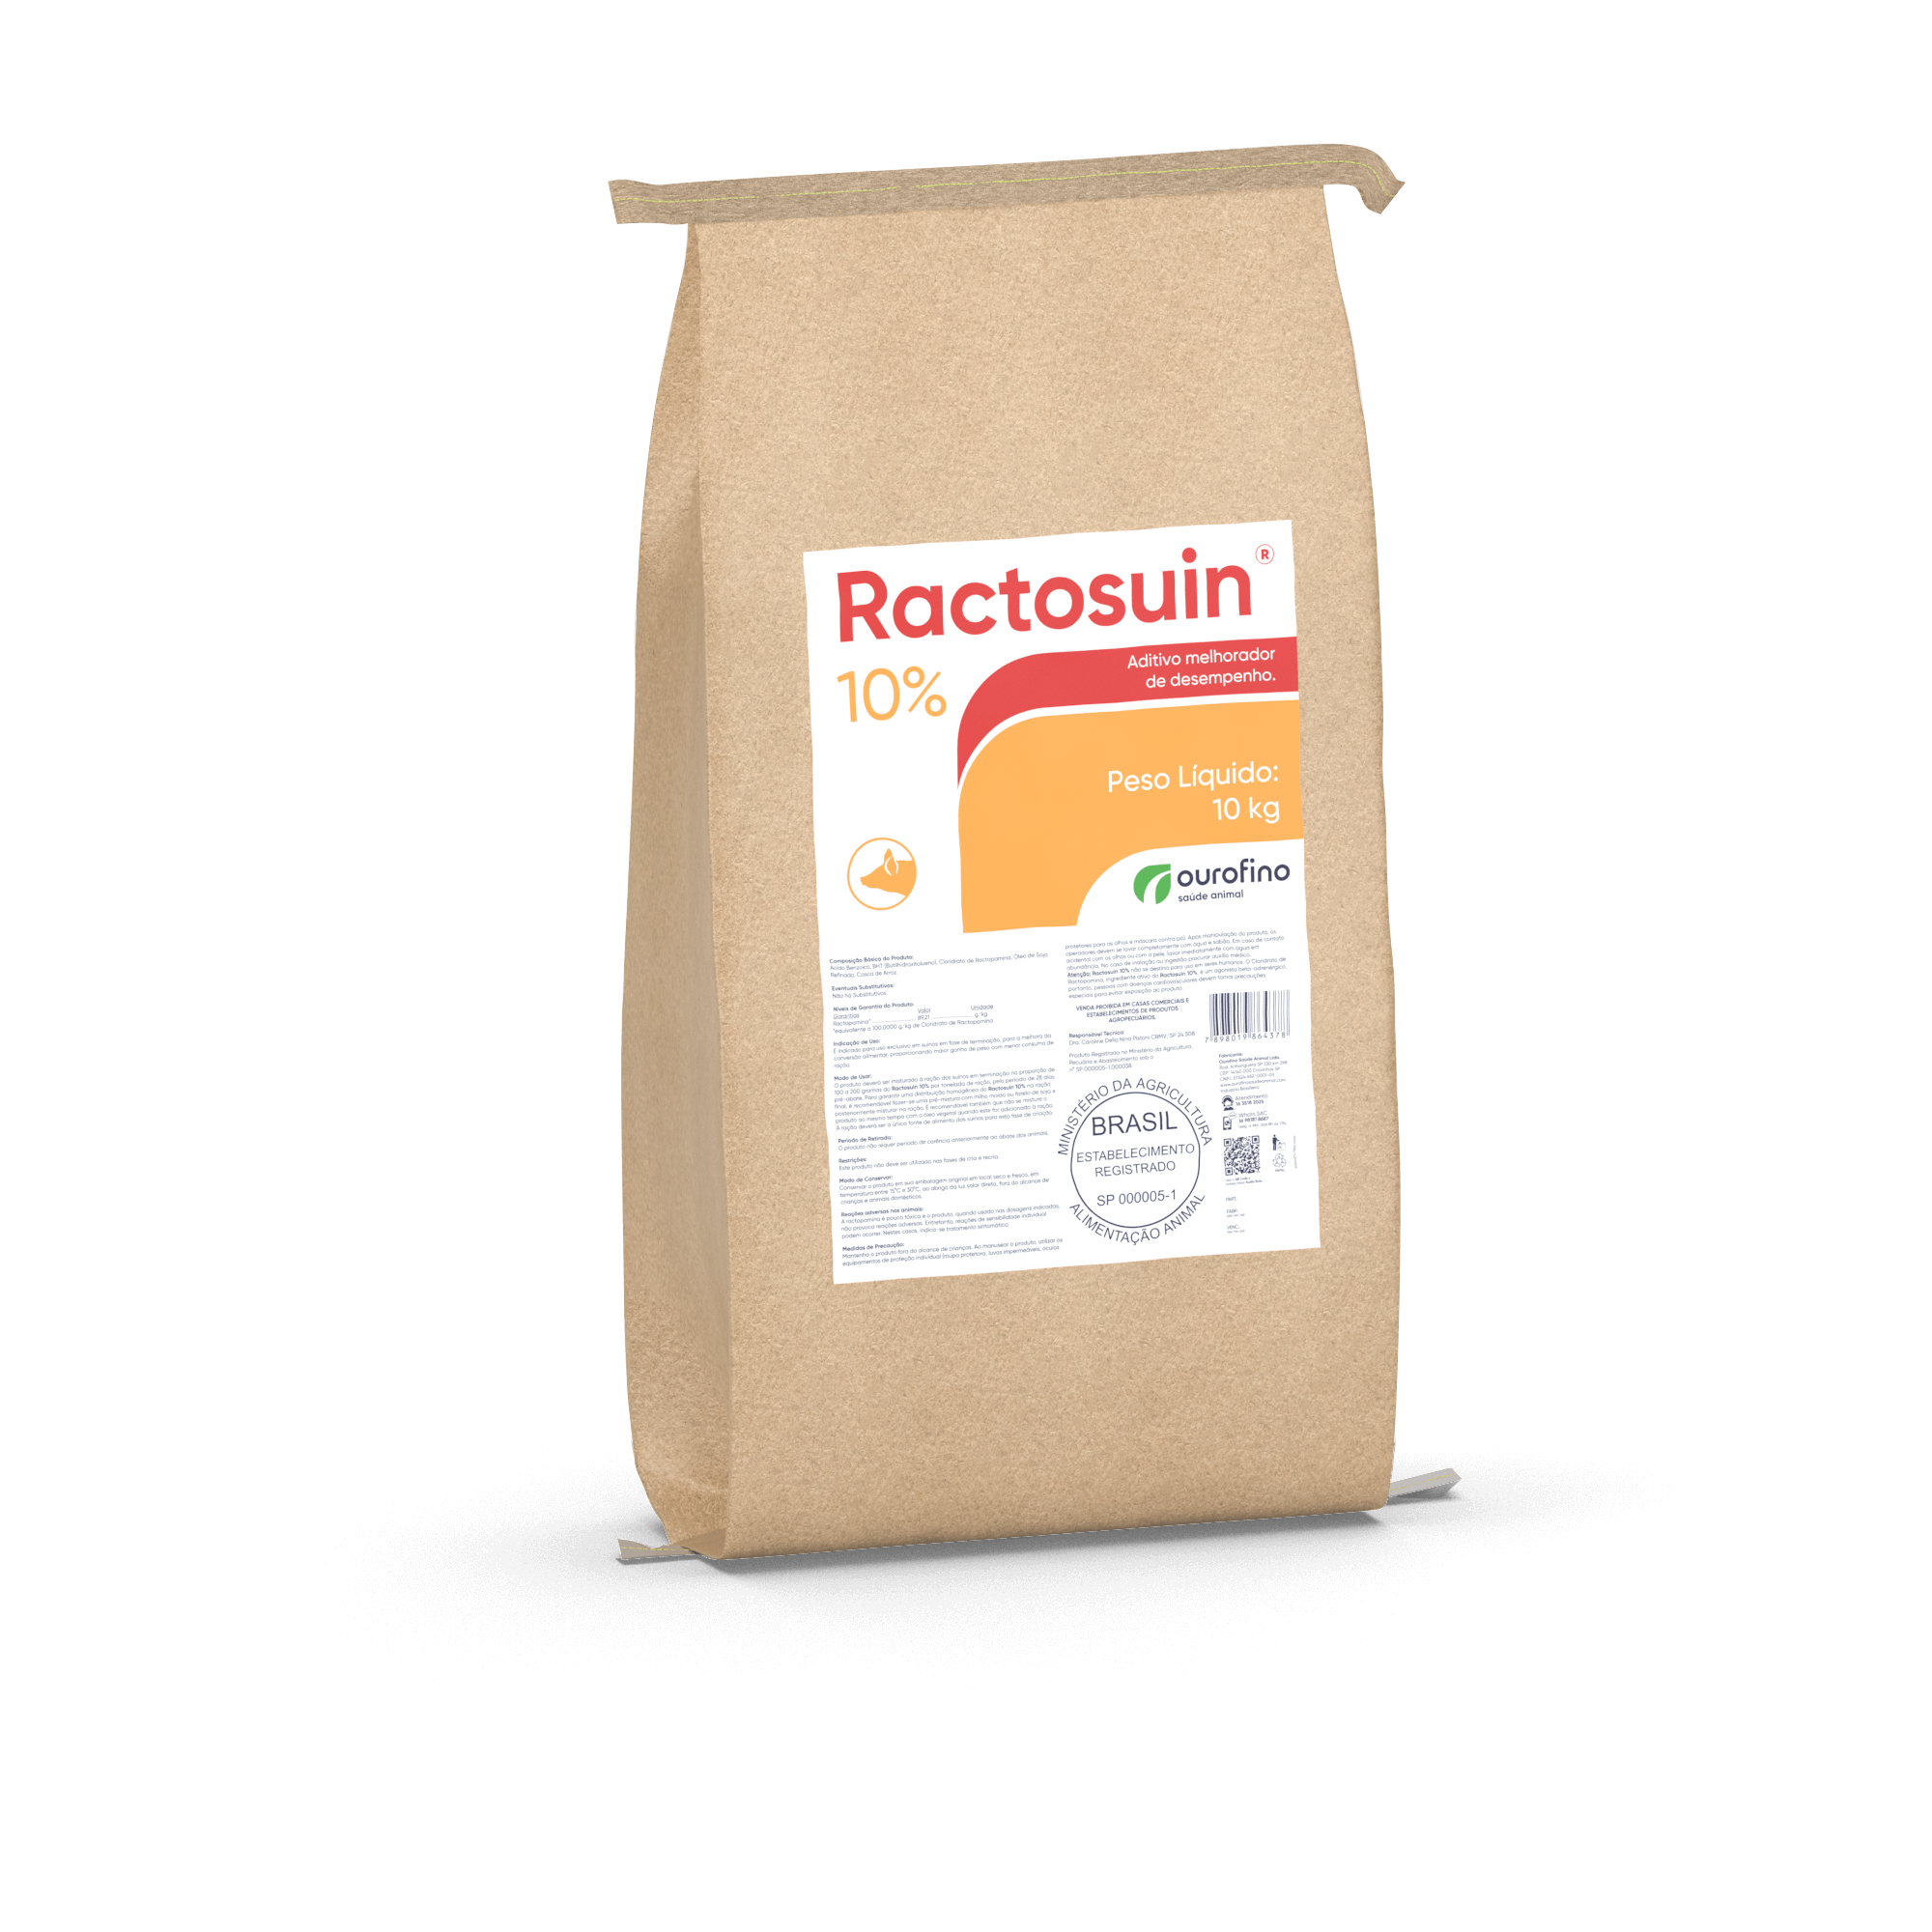 Ractosuin® 10%